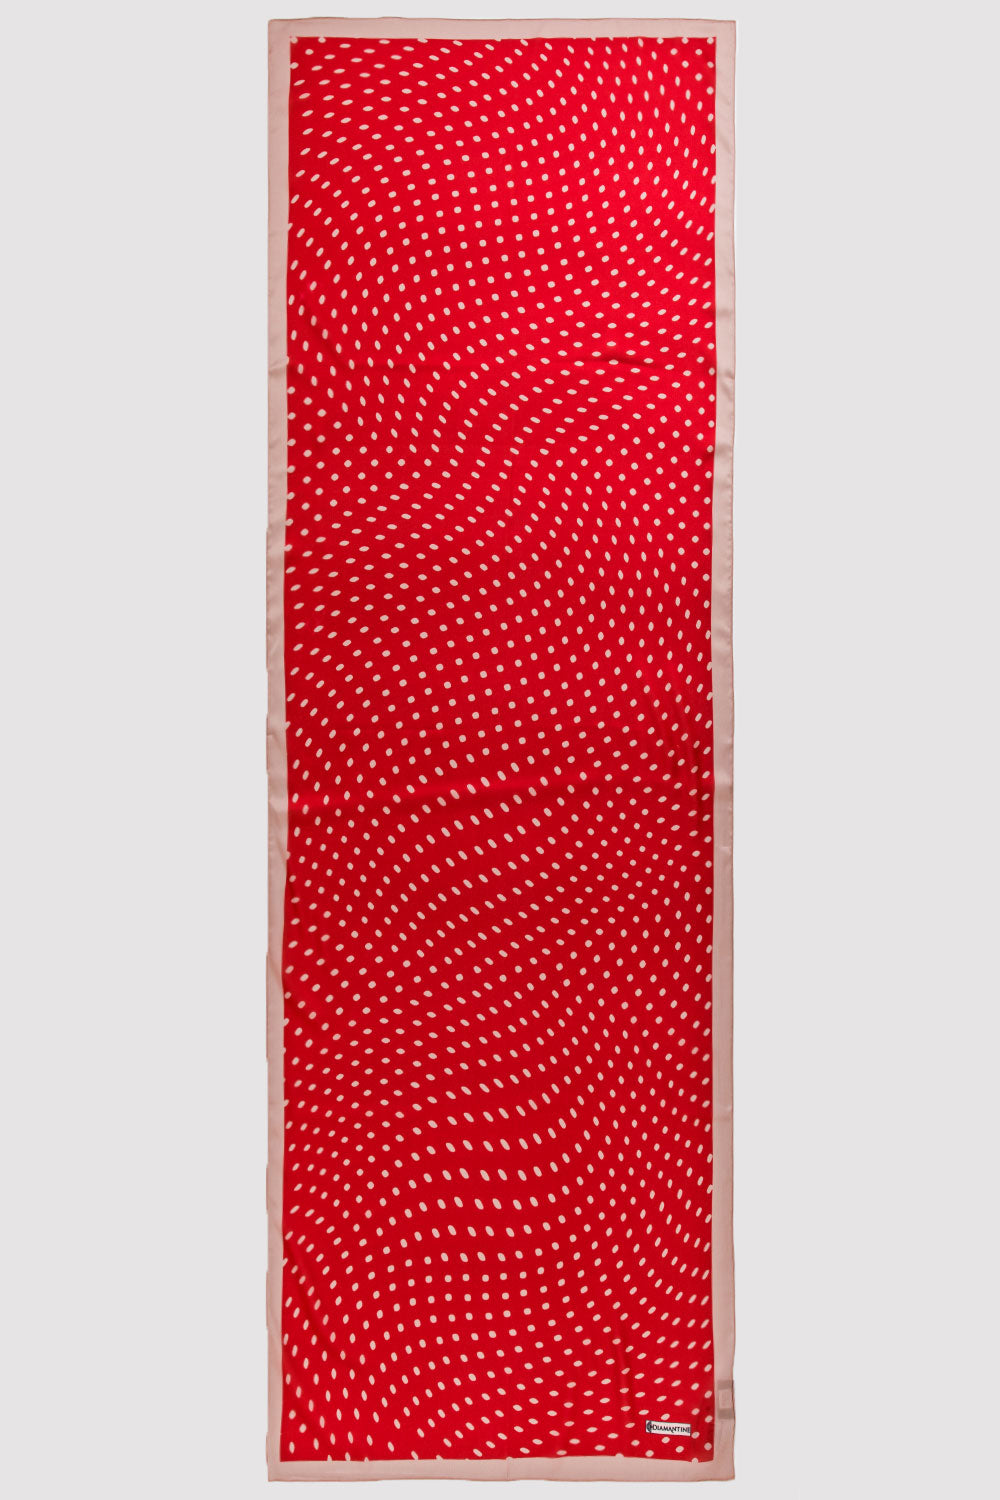 Silk Satin Scarf in Red & Beige Print